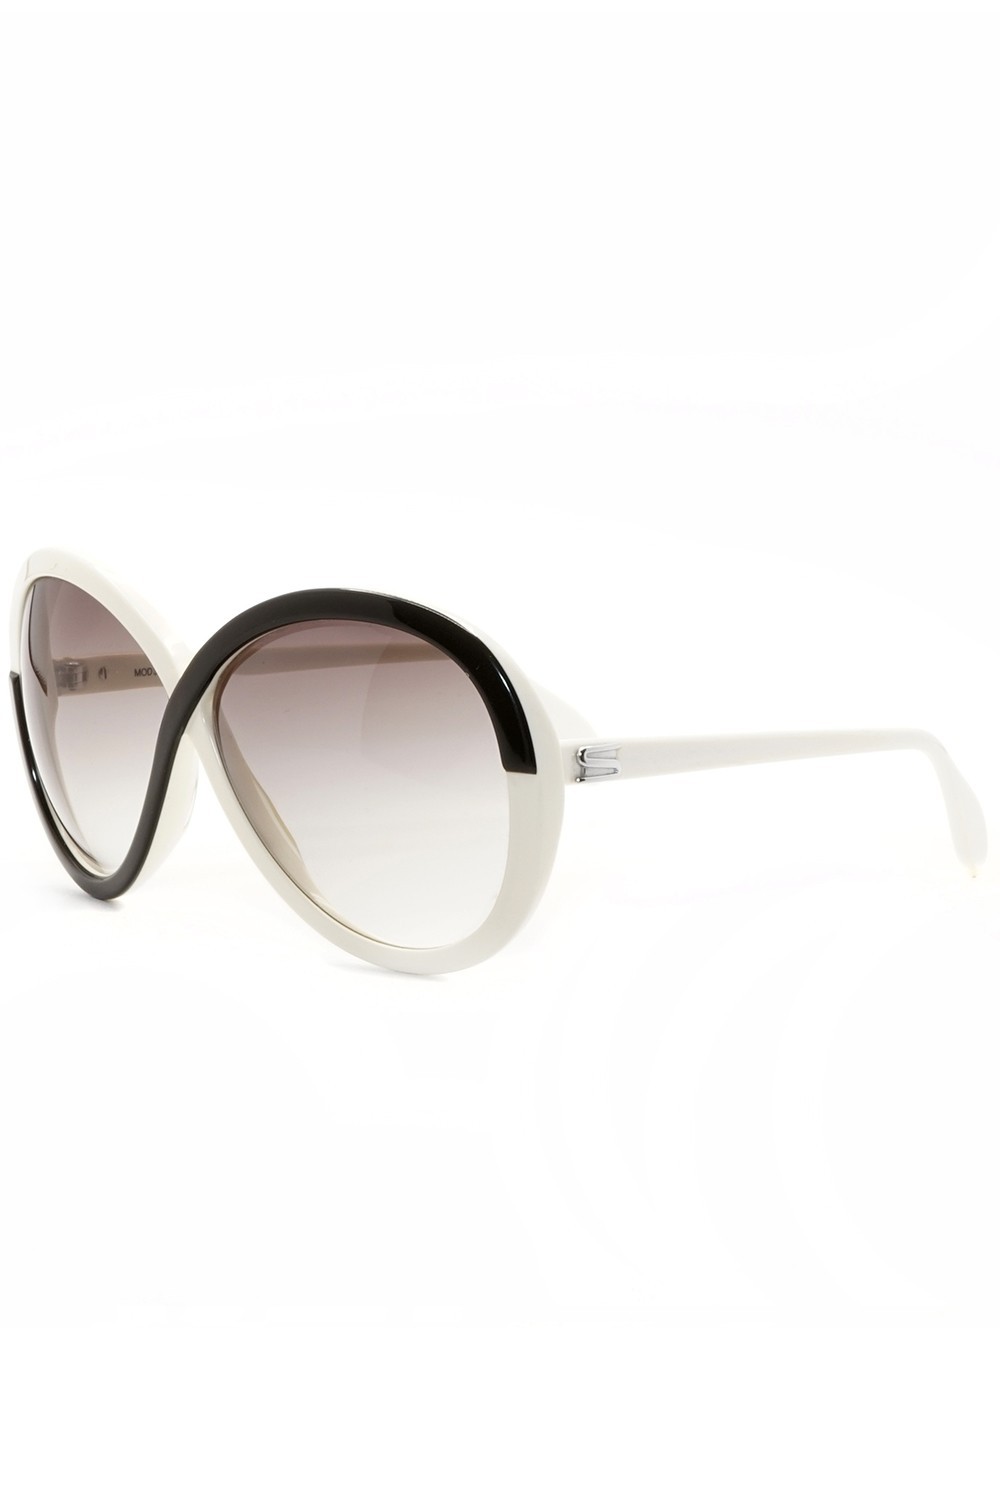 Silhouette - Occhiali da sole vintage in celluloide a farfalla per donna